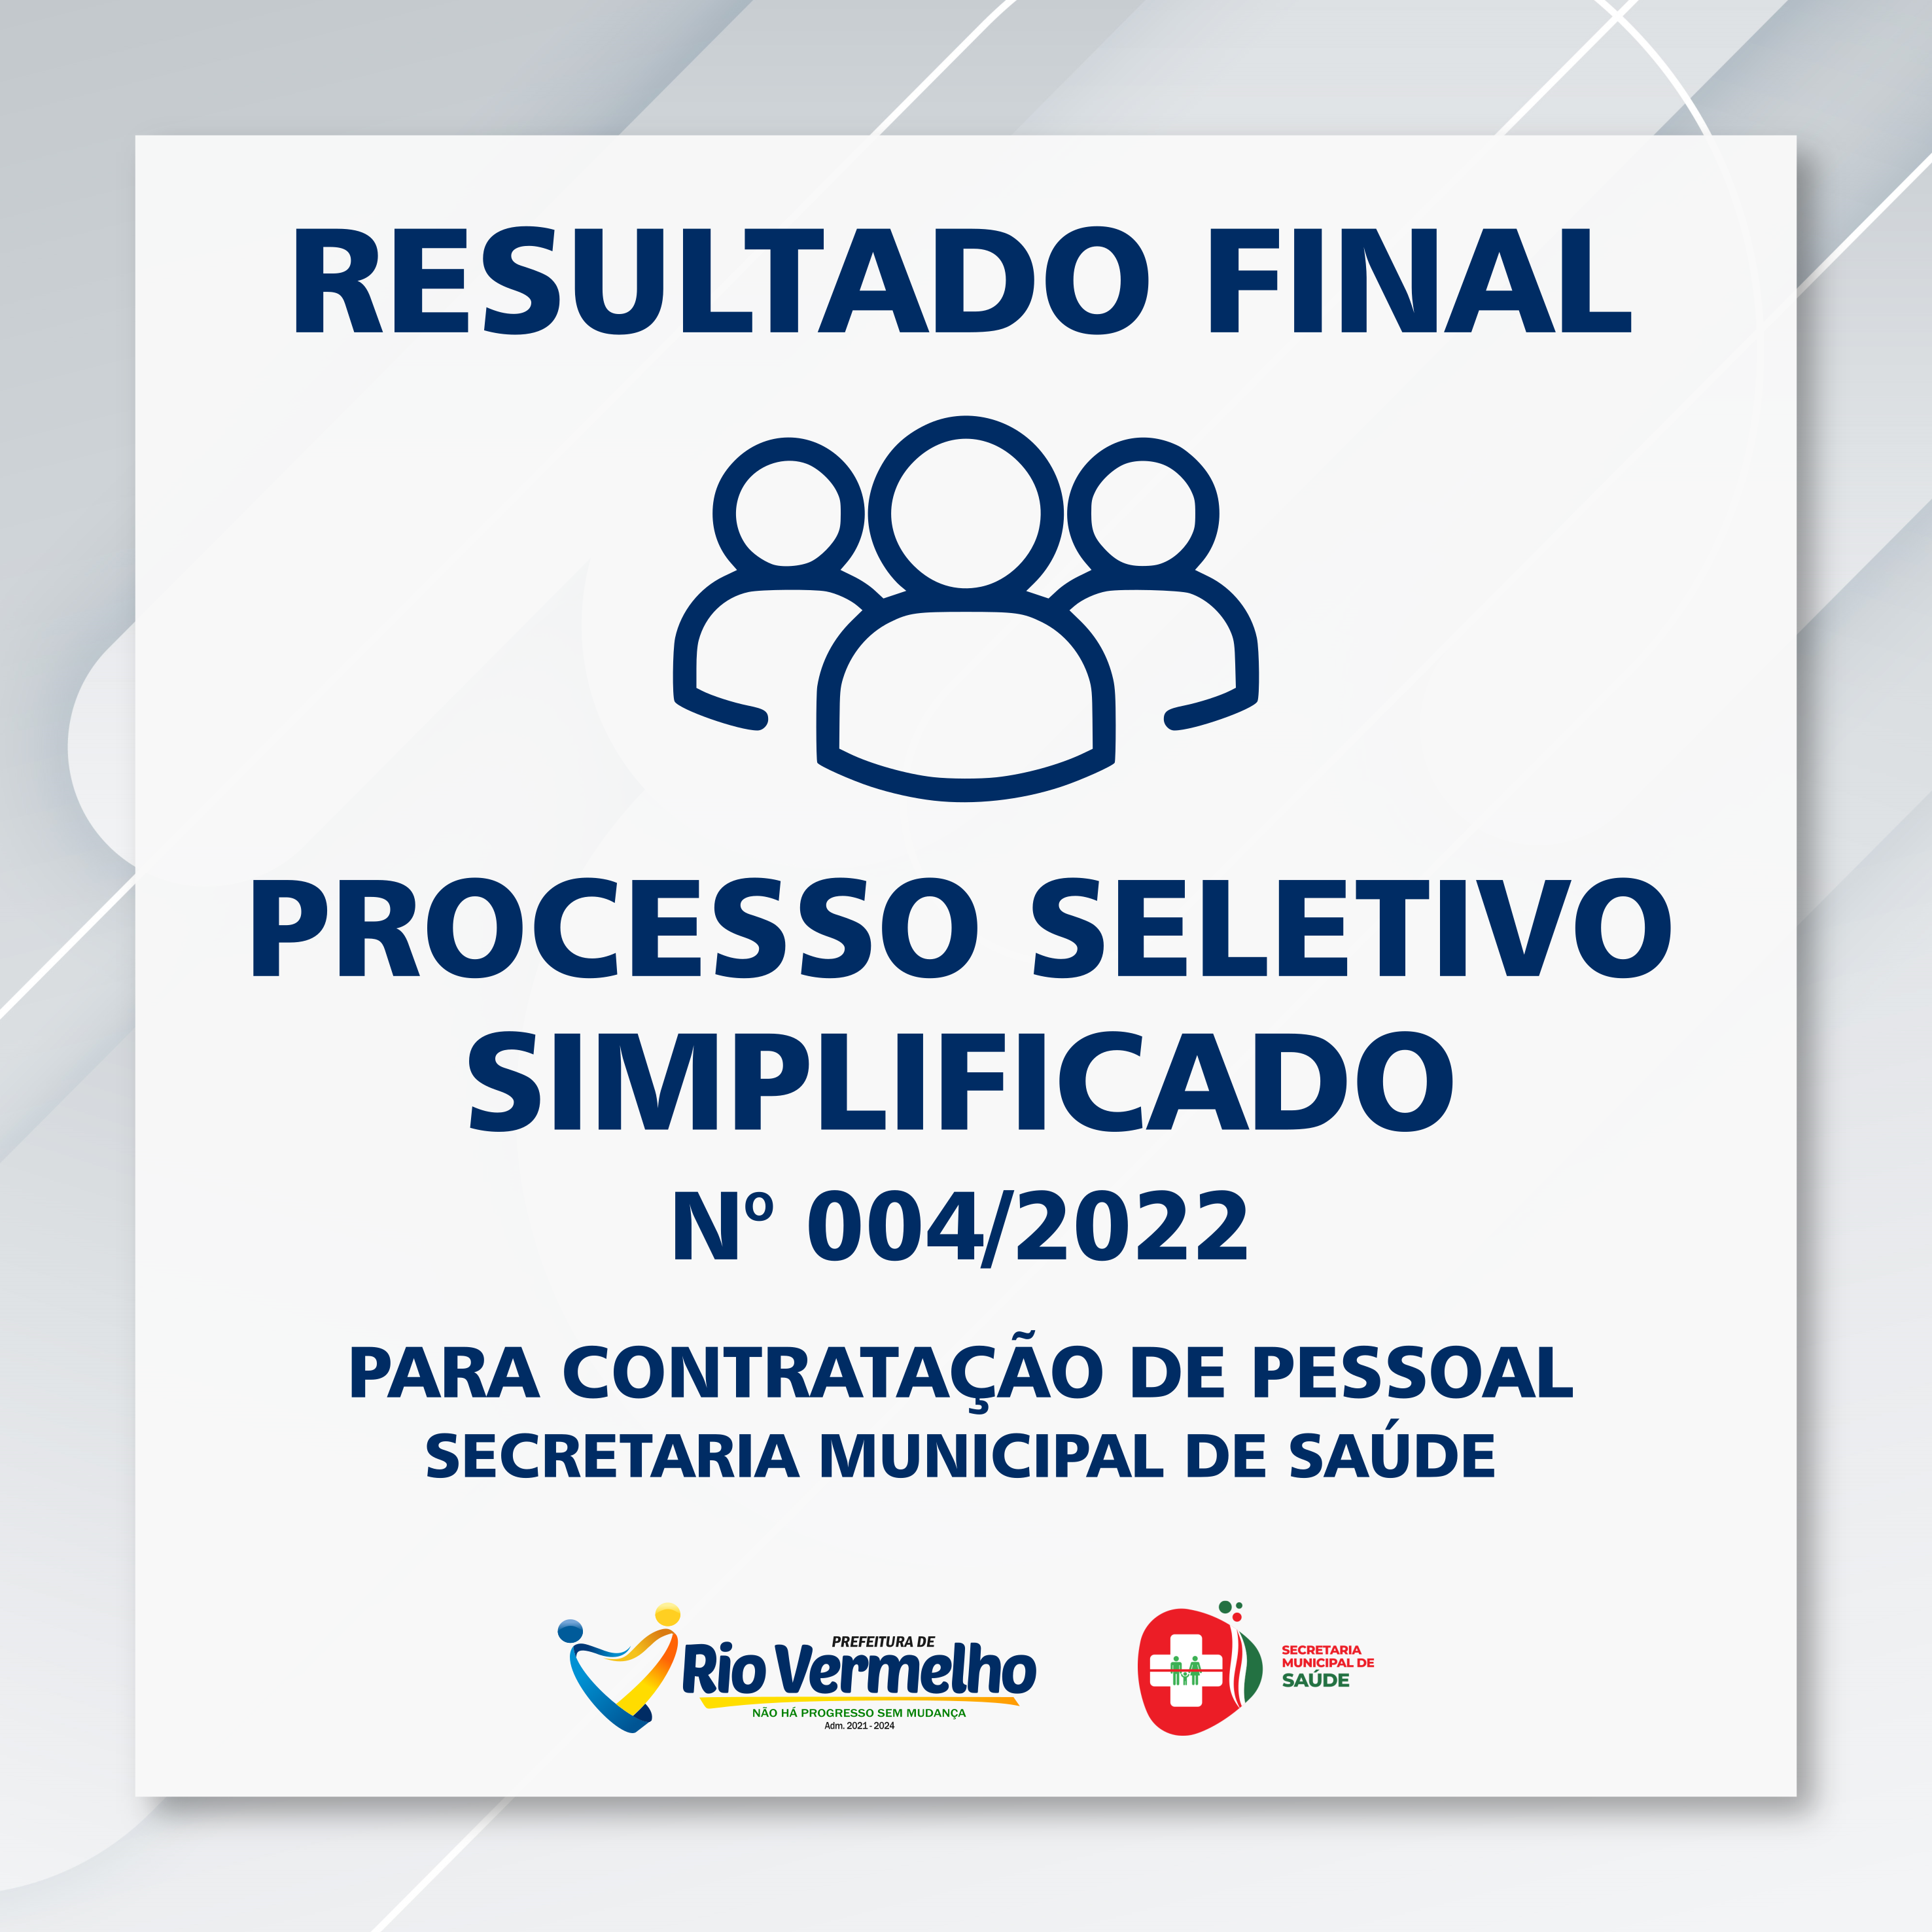 You are currently viewing RESULTADO FINAL DO PROCESSO SELETIVO SIMPLIFICADO EDITAL Nº 004/2022 / SECRETARIA DE SAÚDE